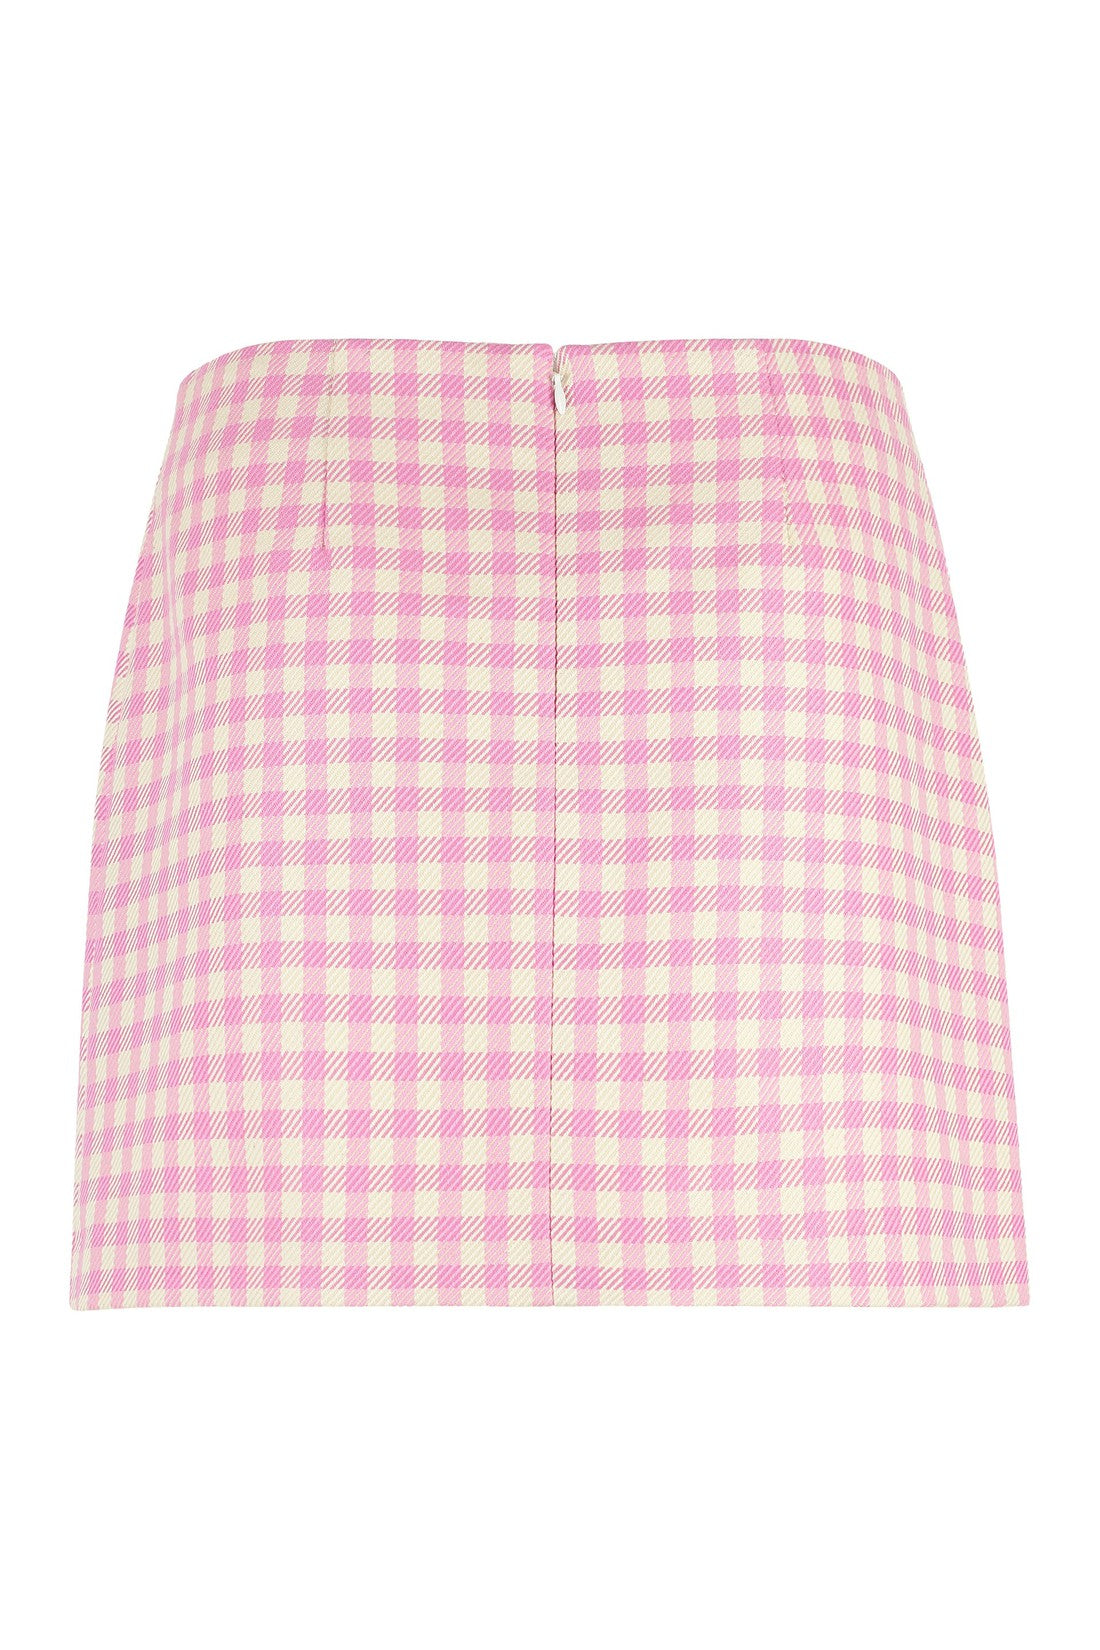 AMI PARIS-OUTLET-SALE-Cotton and wool mini-skirt-ARCHIVIST